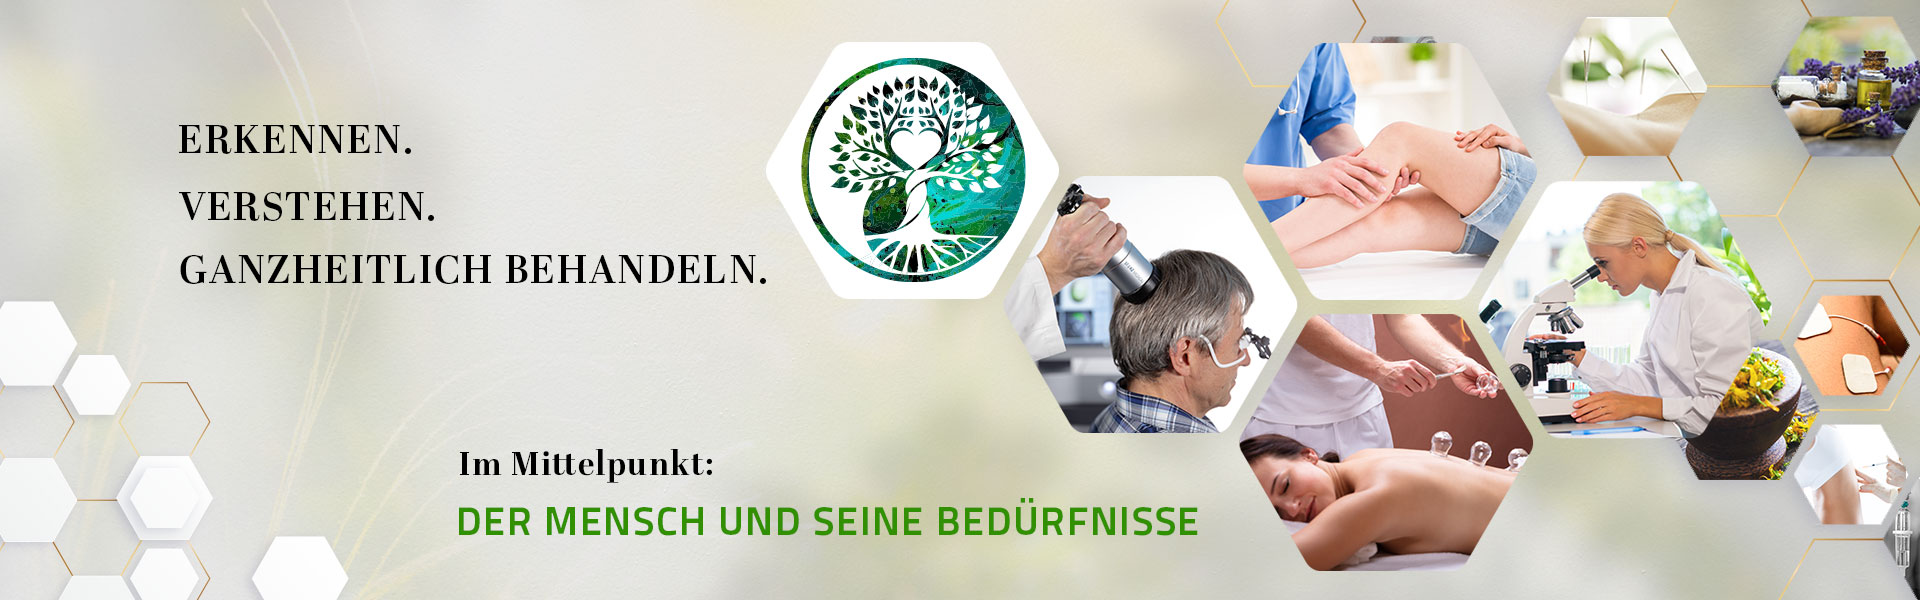 Gemeinschaftspraxis Dr. Schader & Heine - home desktop - Aschau im Chiemgau - Bayern